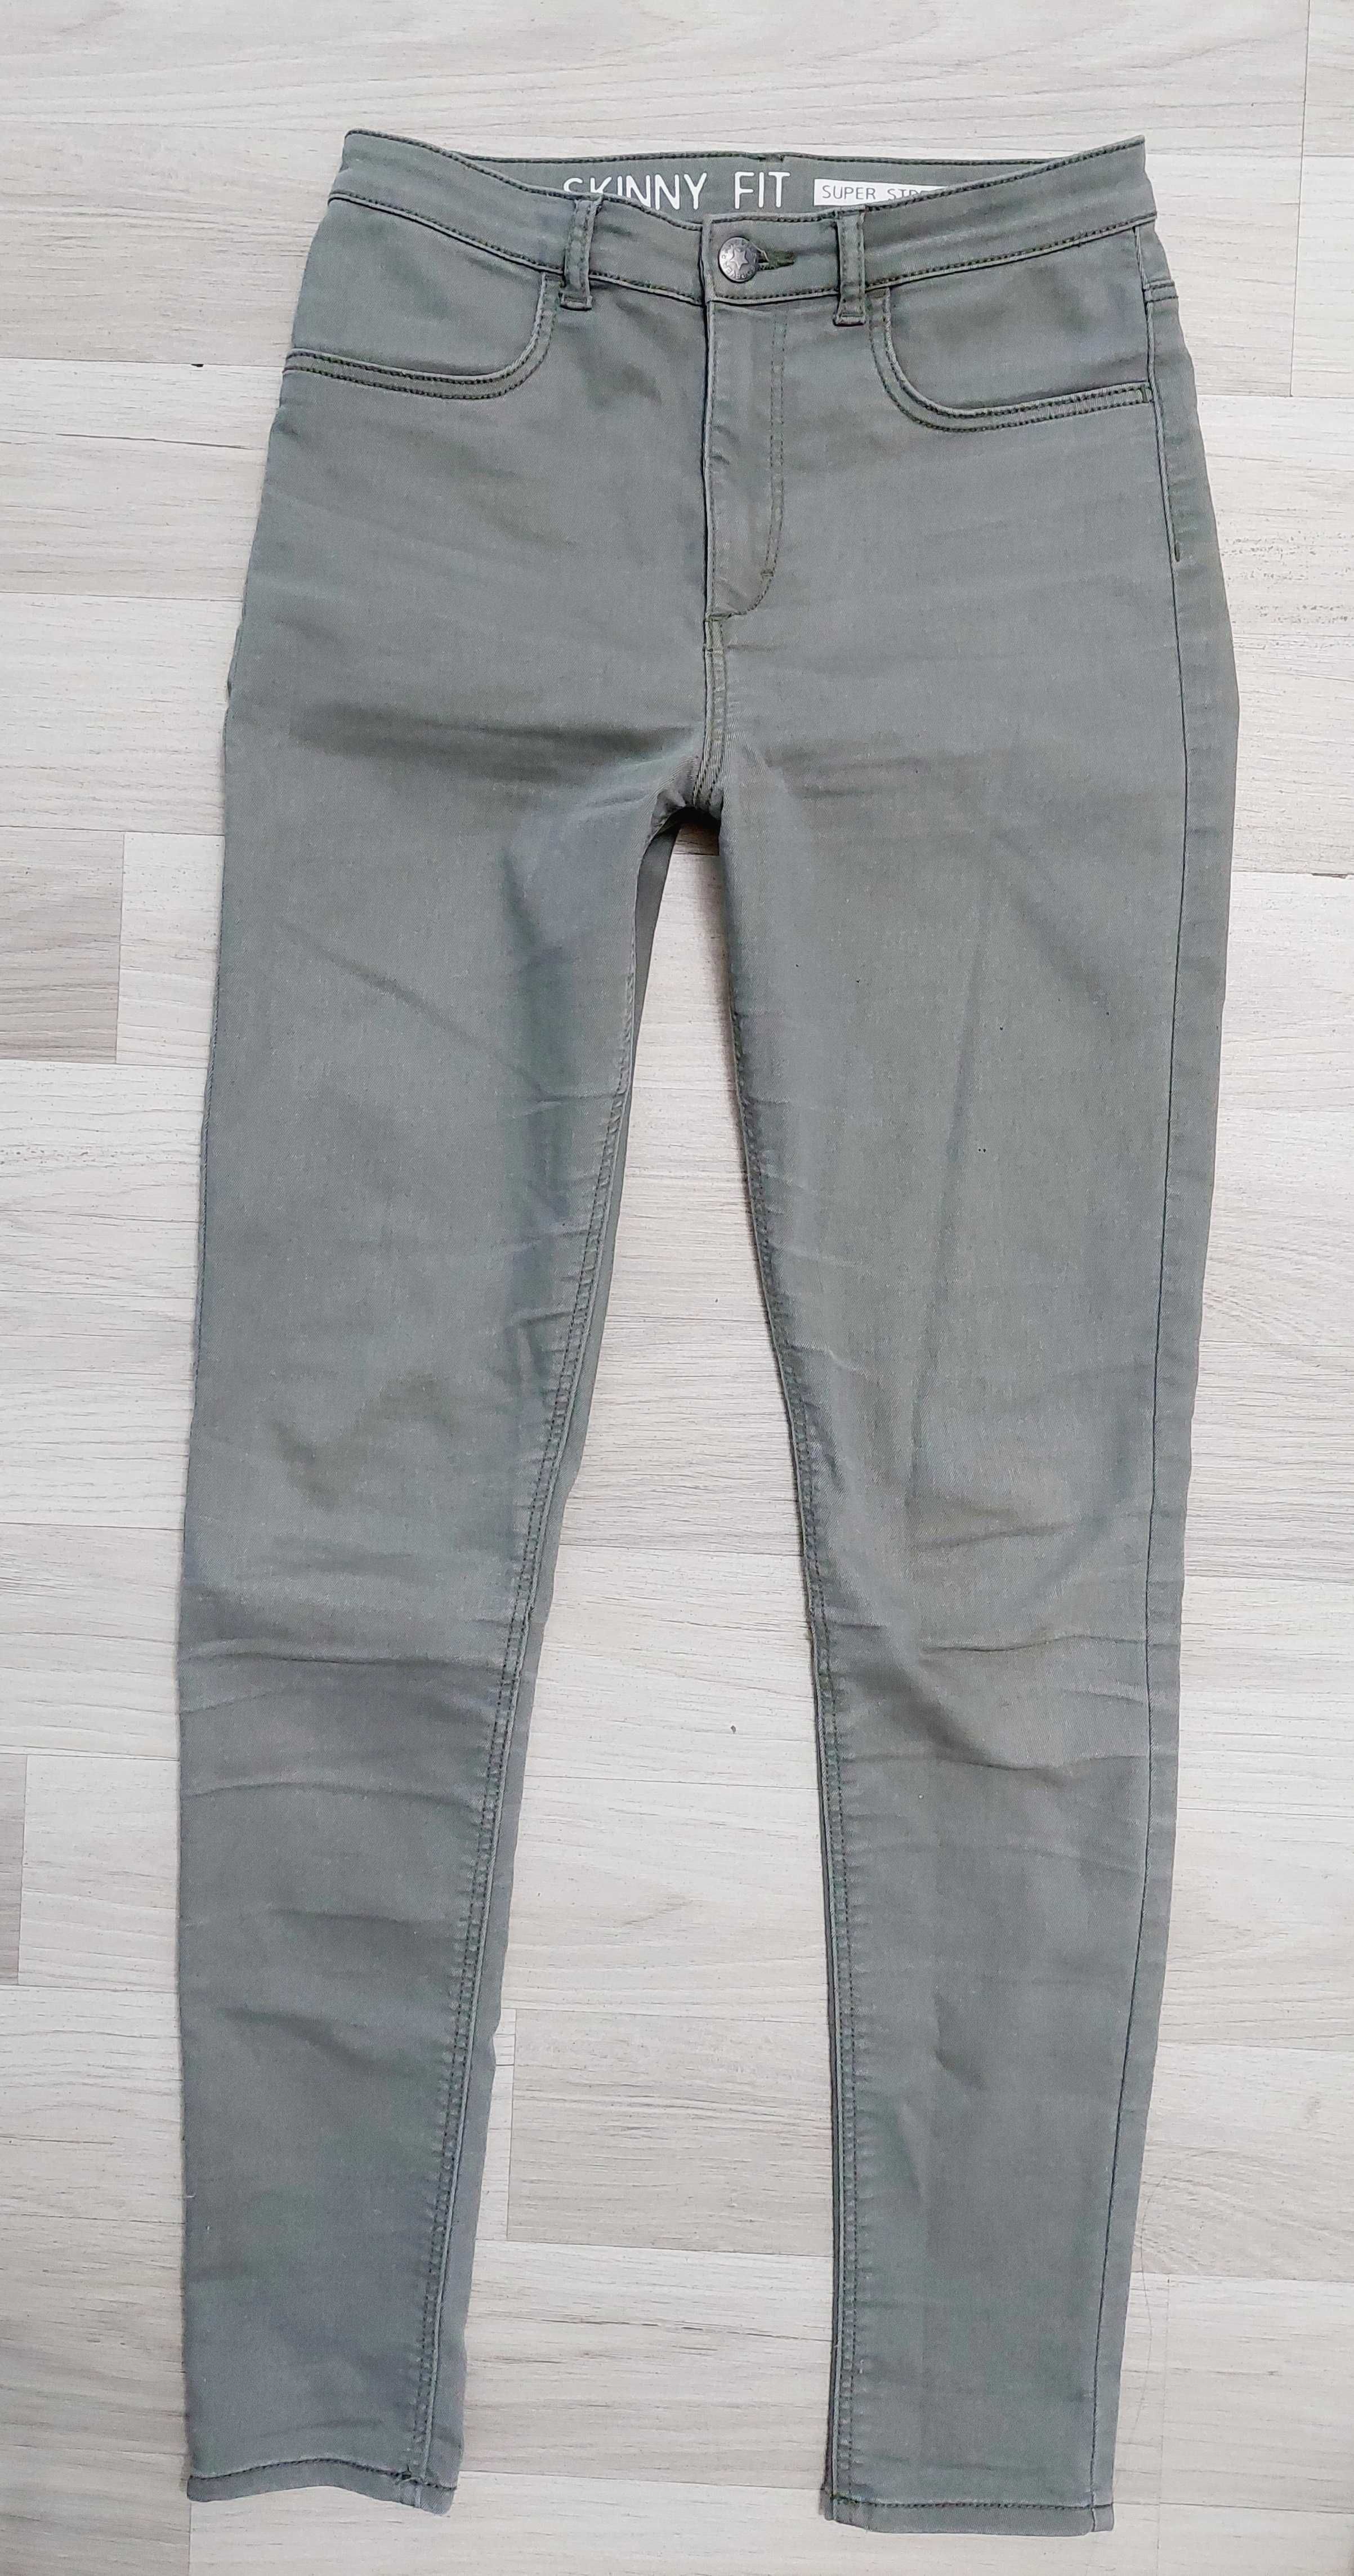 XS / S spodnie skiny